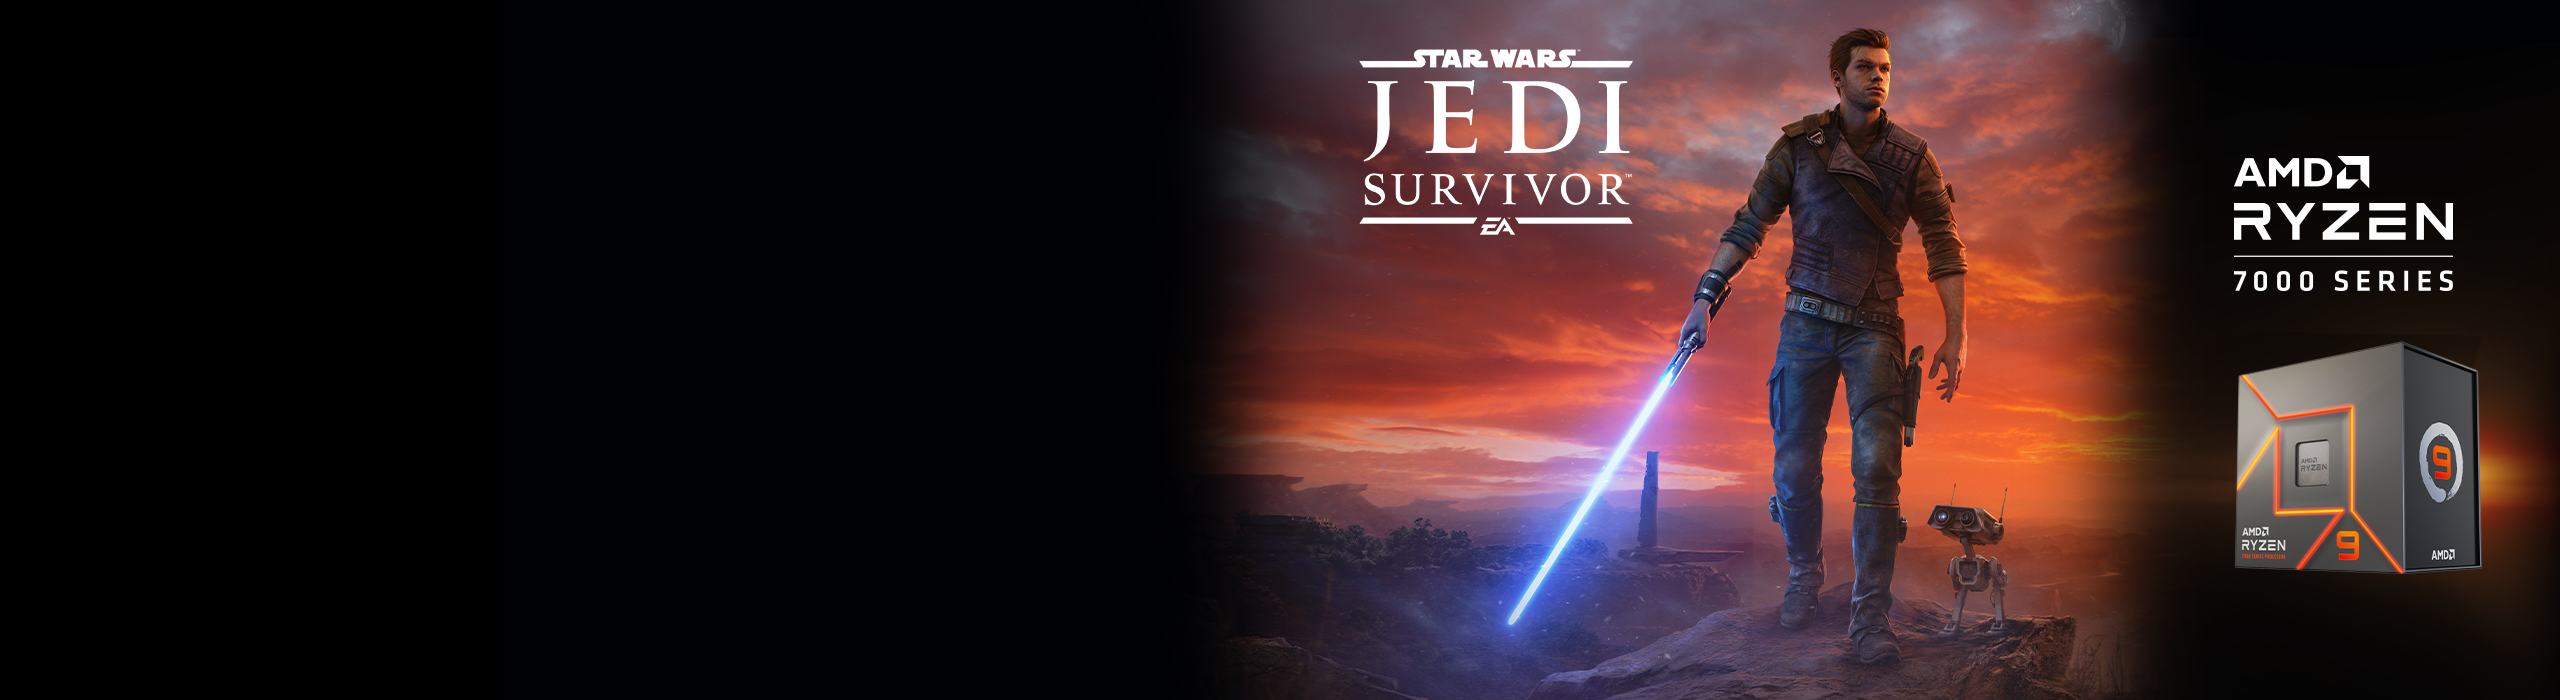 <strong>Get STAR WARS Jedi: Survivor&trade;</strong> 